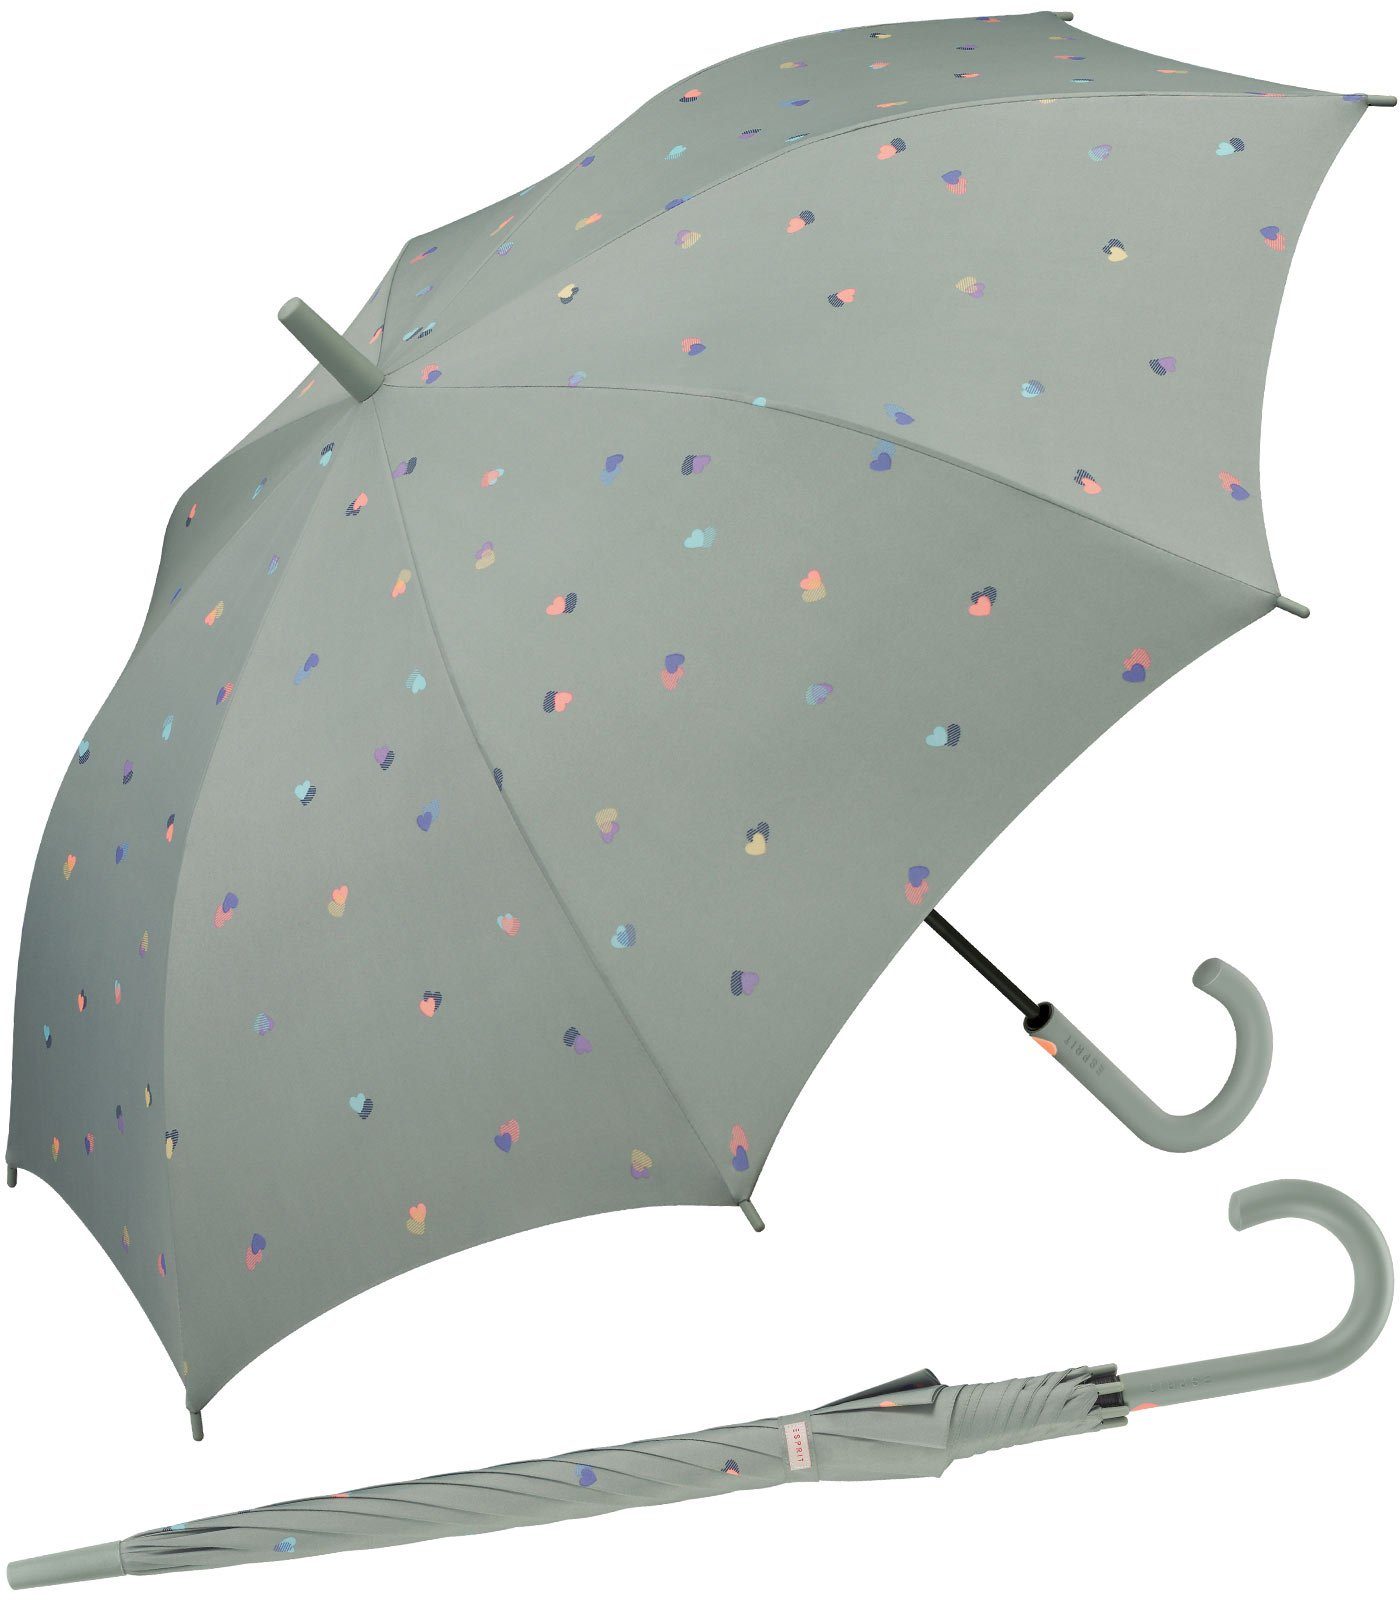 Esprit Langregenschirm großer Regenschirm für Damen mit Auf-Automatik, stabil, leicht mit Herzen-Motiv - grau